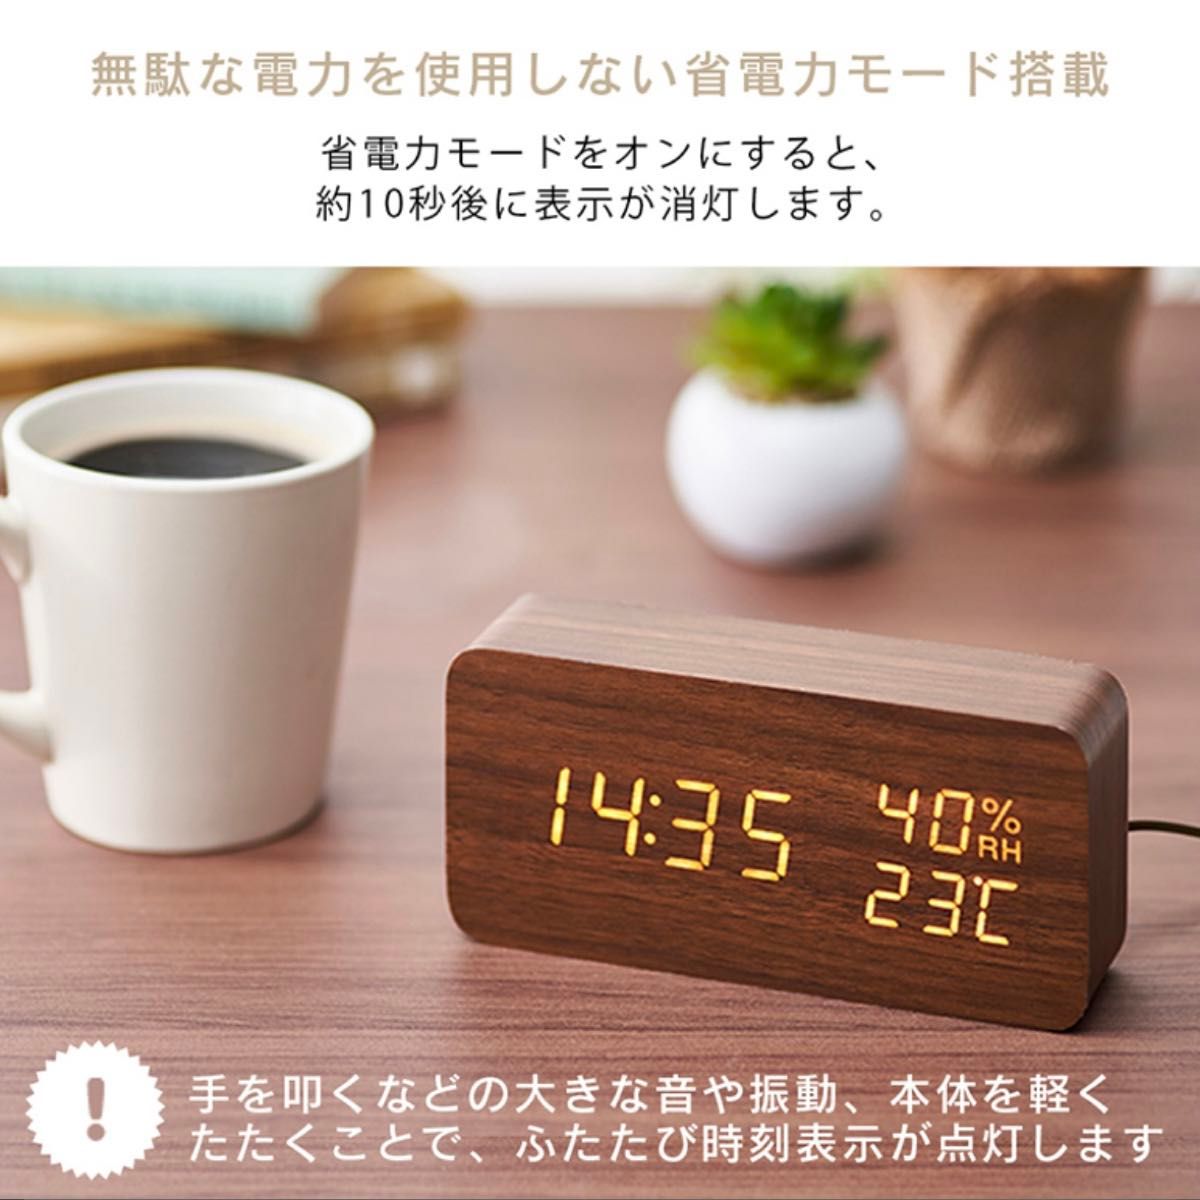 木製デジタル時計